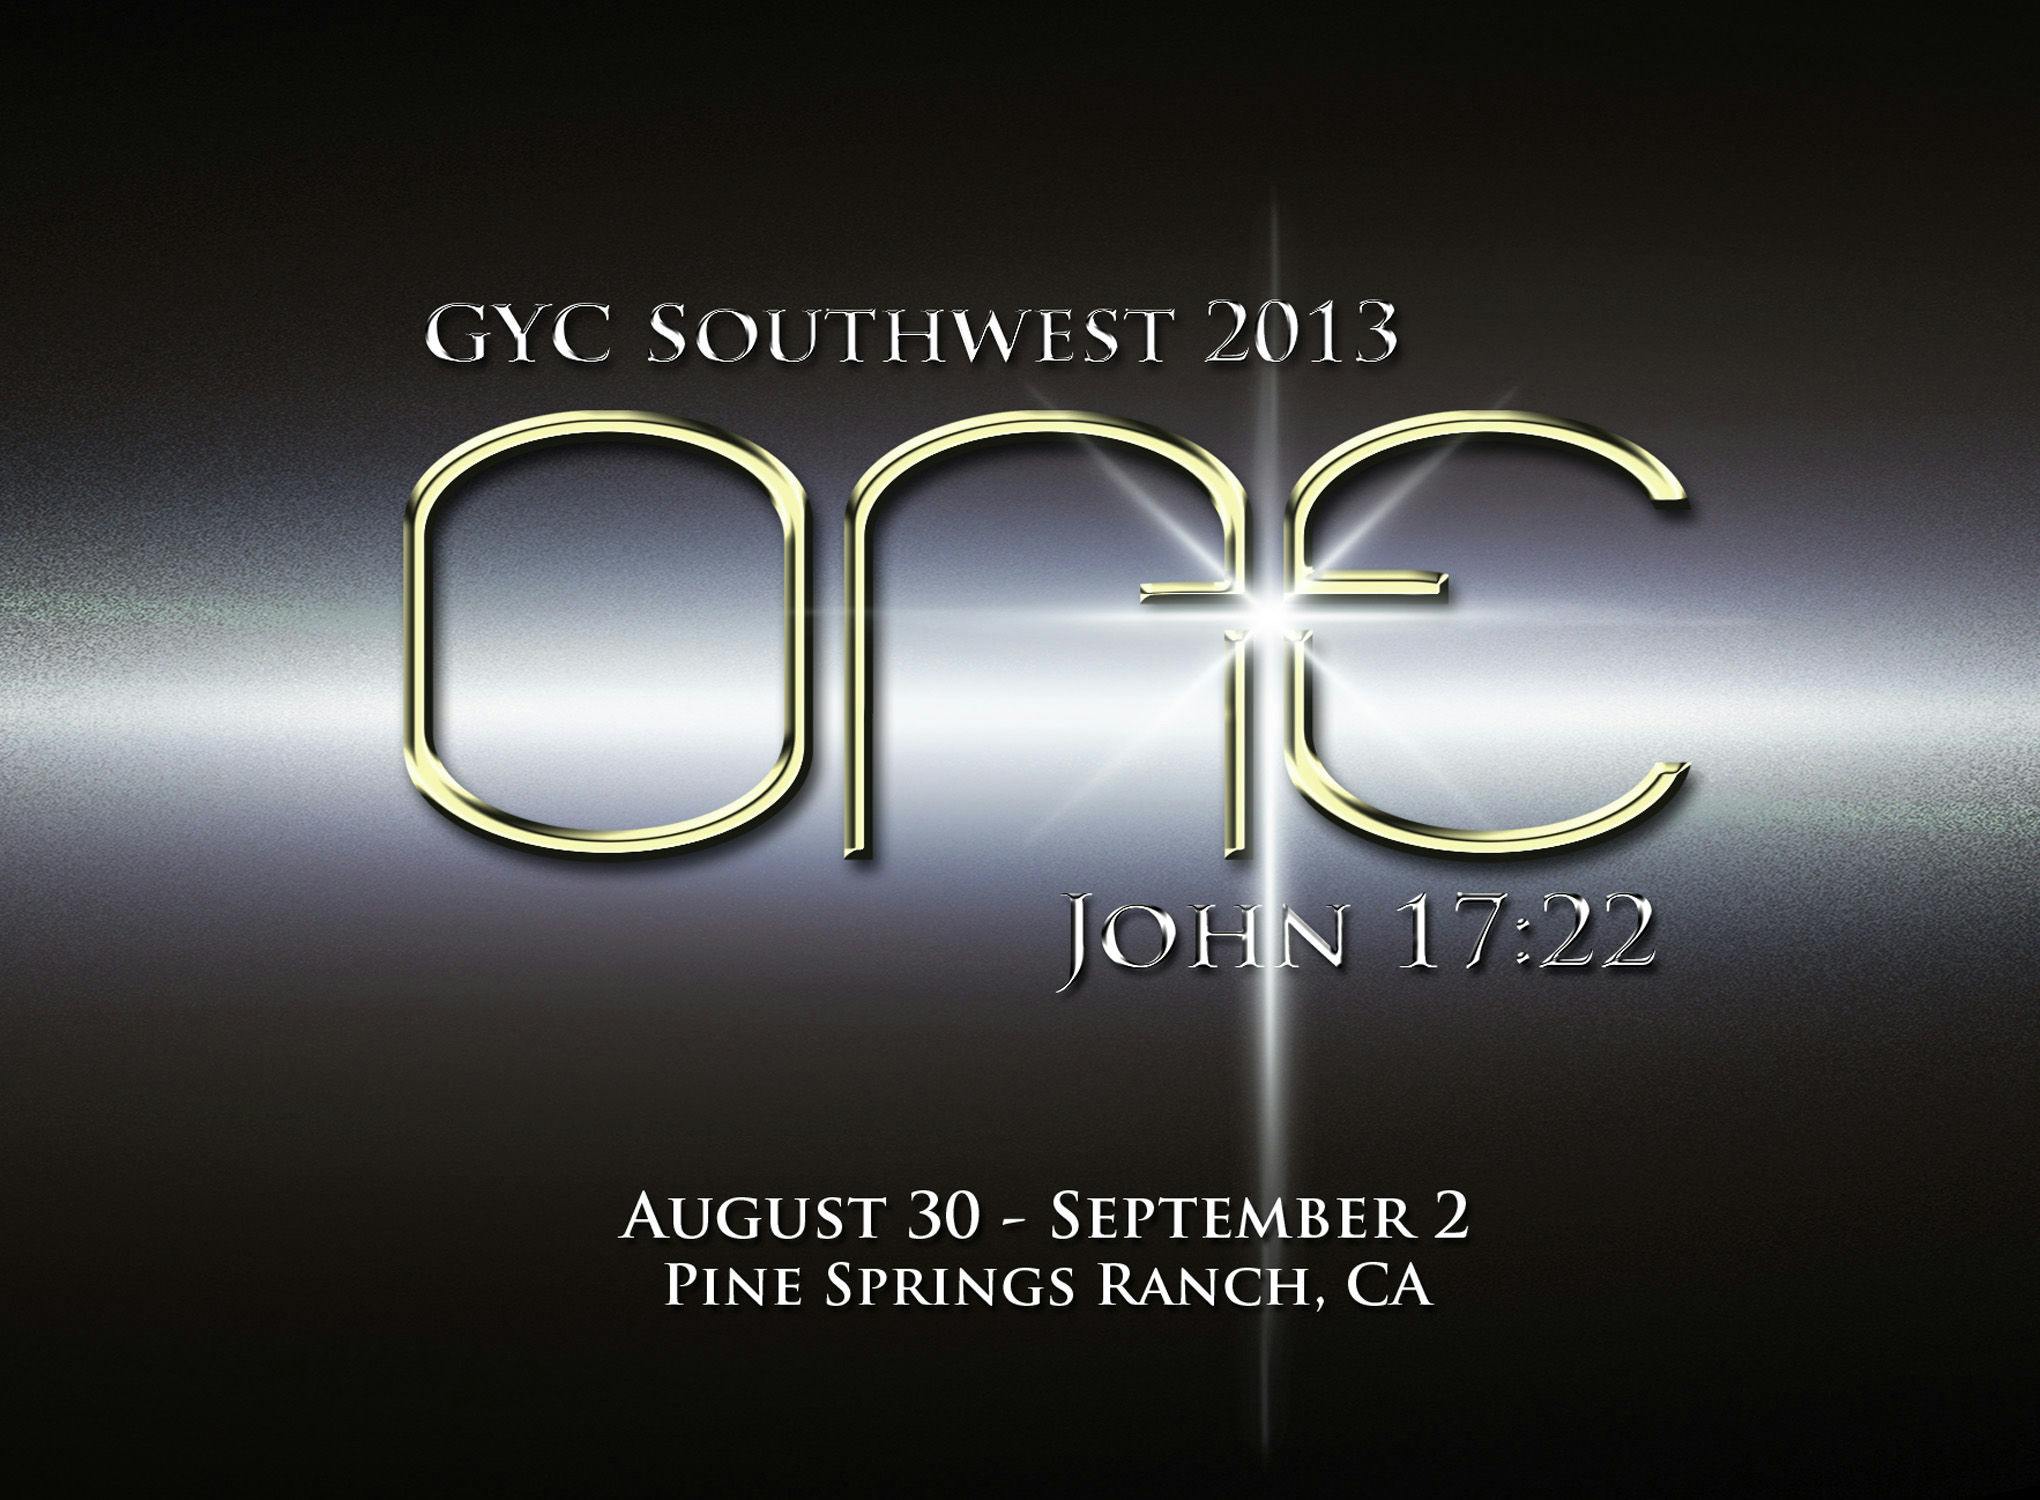 GYC Southwest 2013: ONE